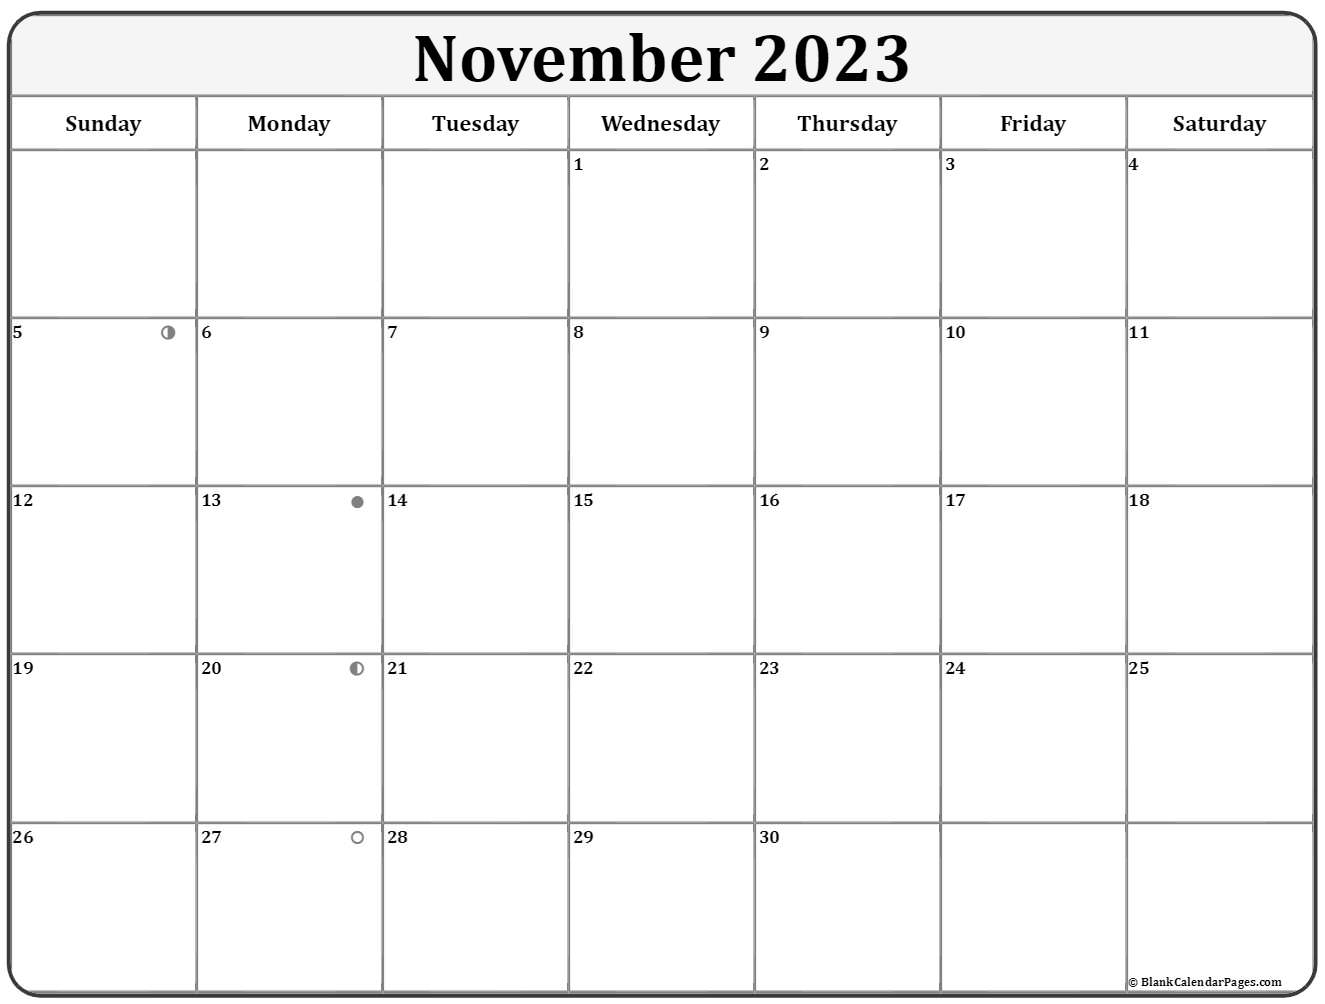 November 2023 Lunar Calendar Moon Phase Calendar